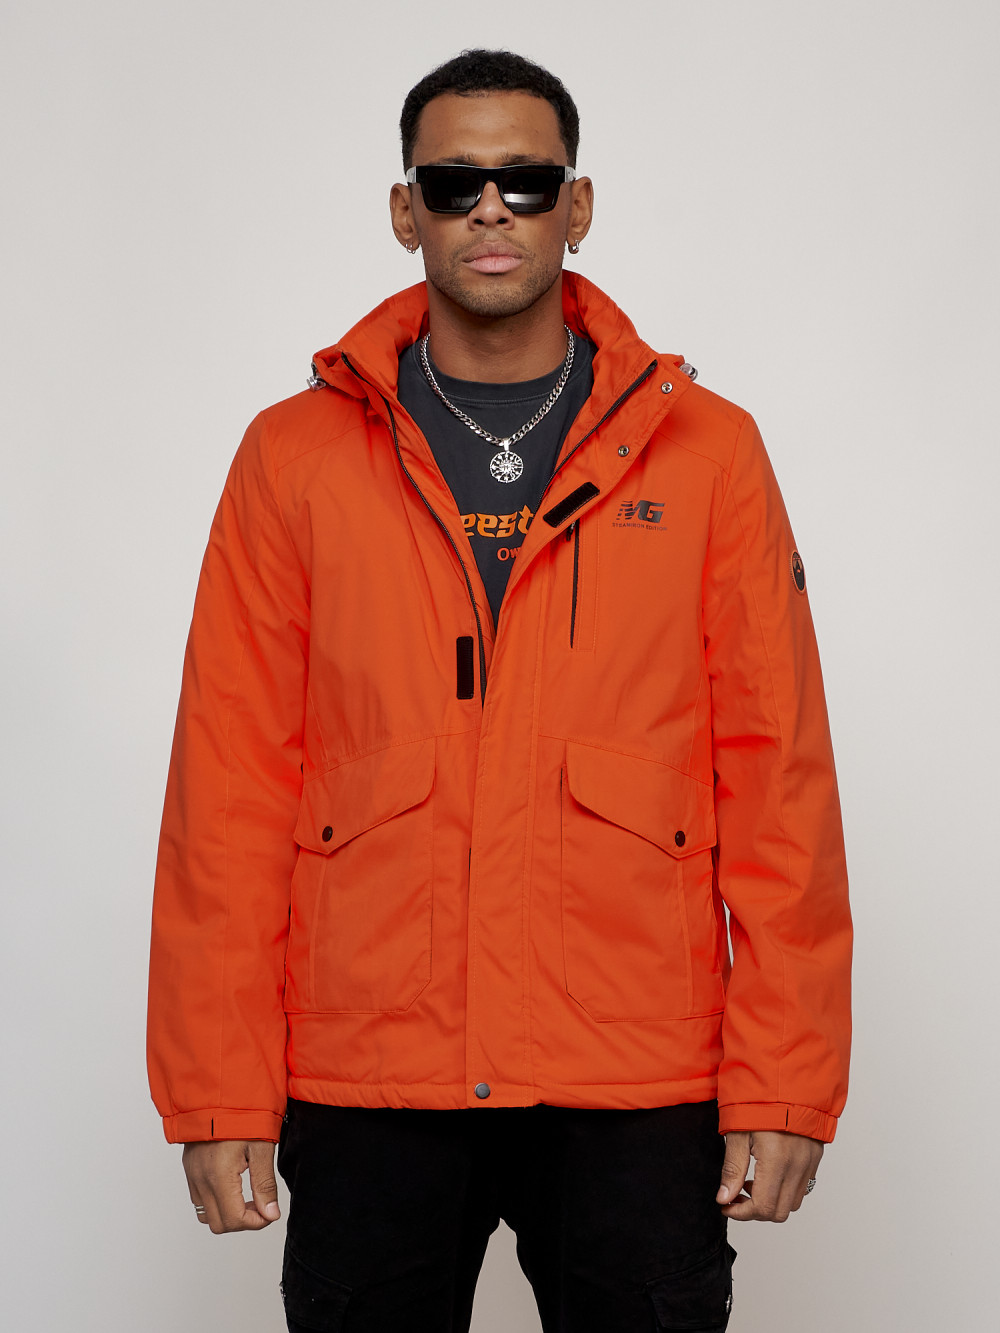 Купить оптом Куртка спортивная мужская весенняя с капюшоном оранжевого цвета 88025O в Екатеринбурге